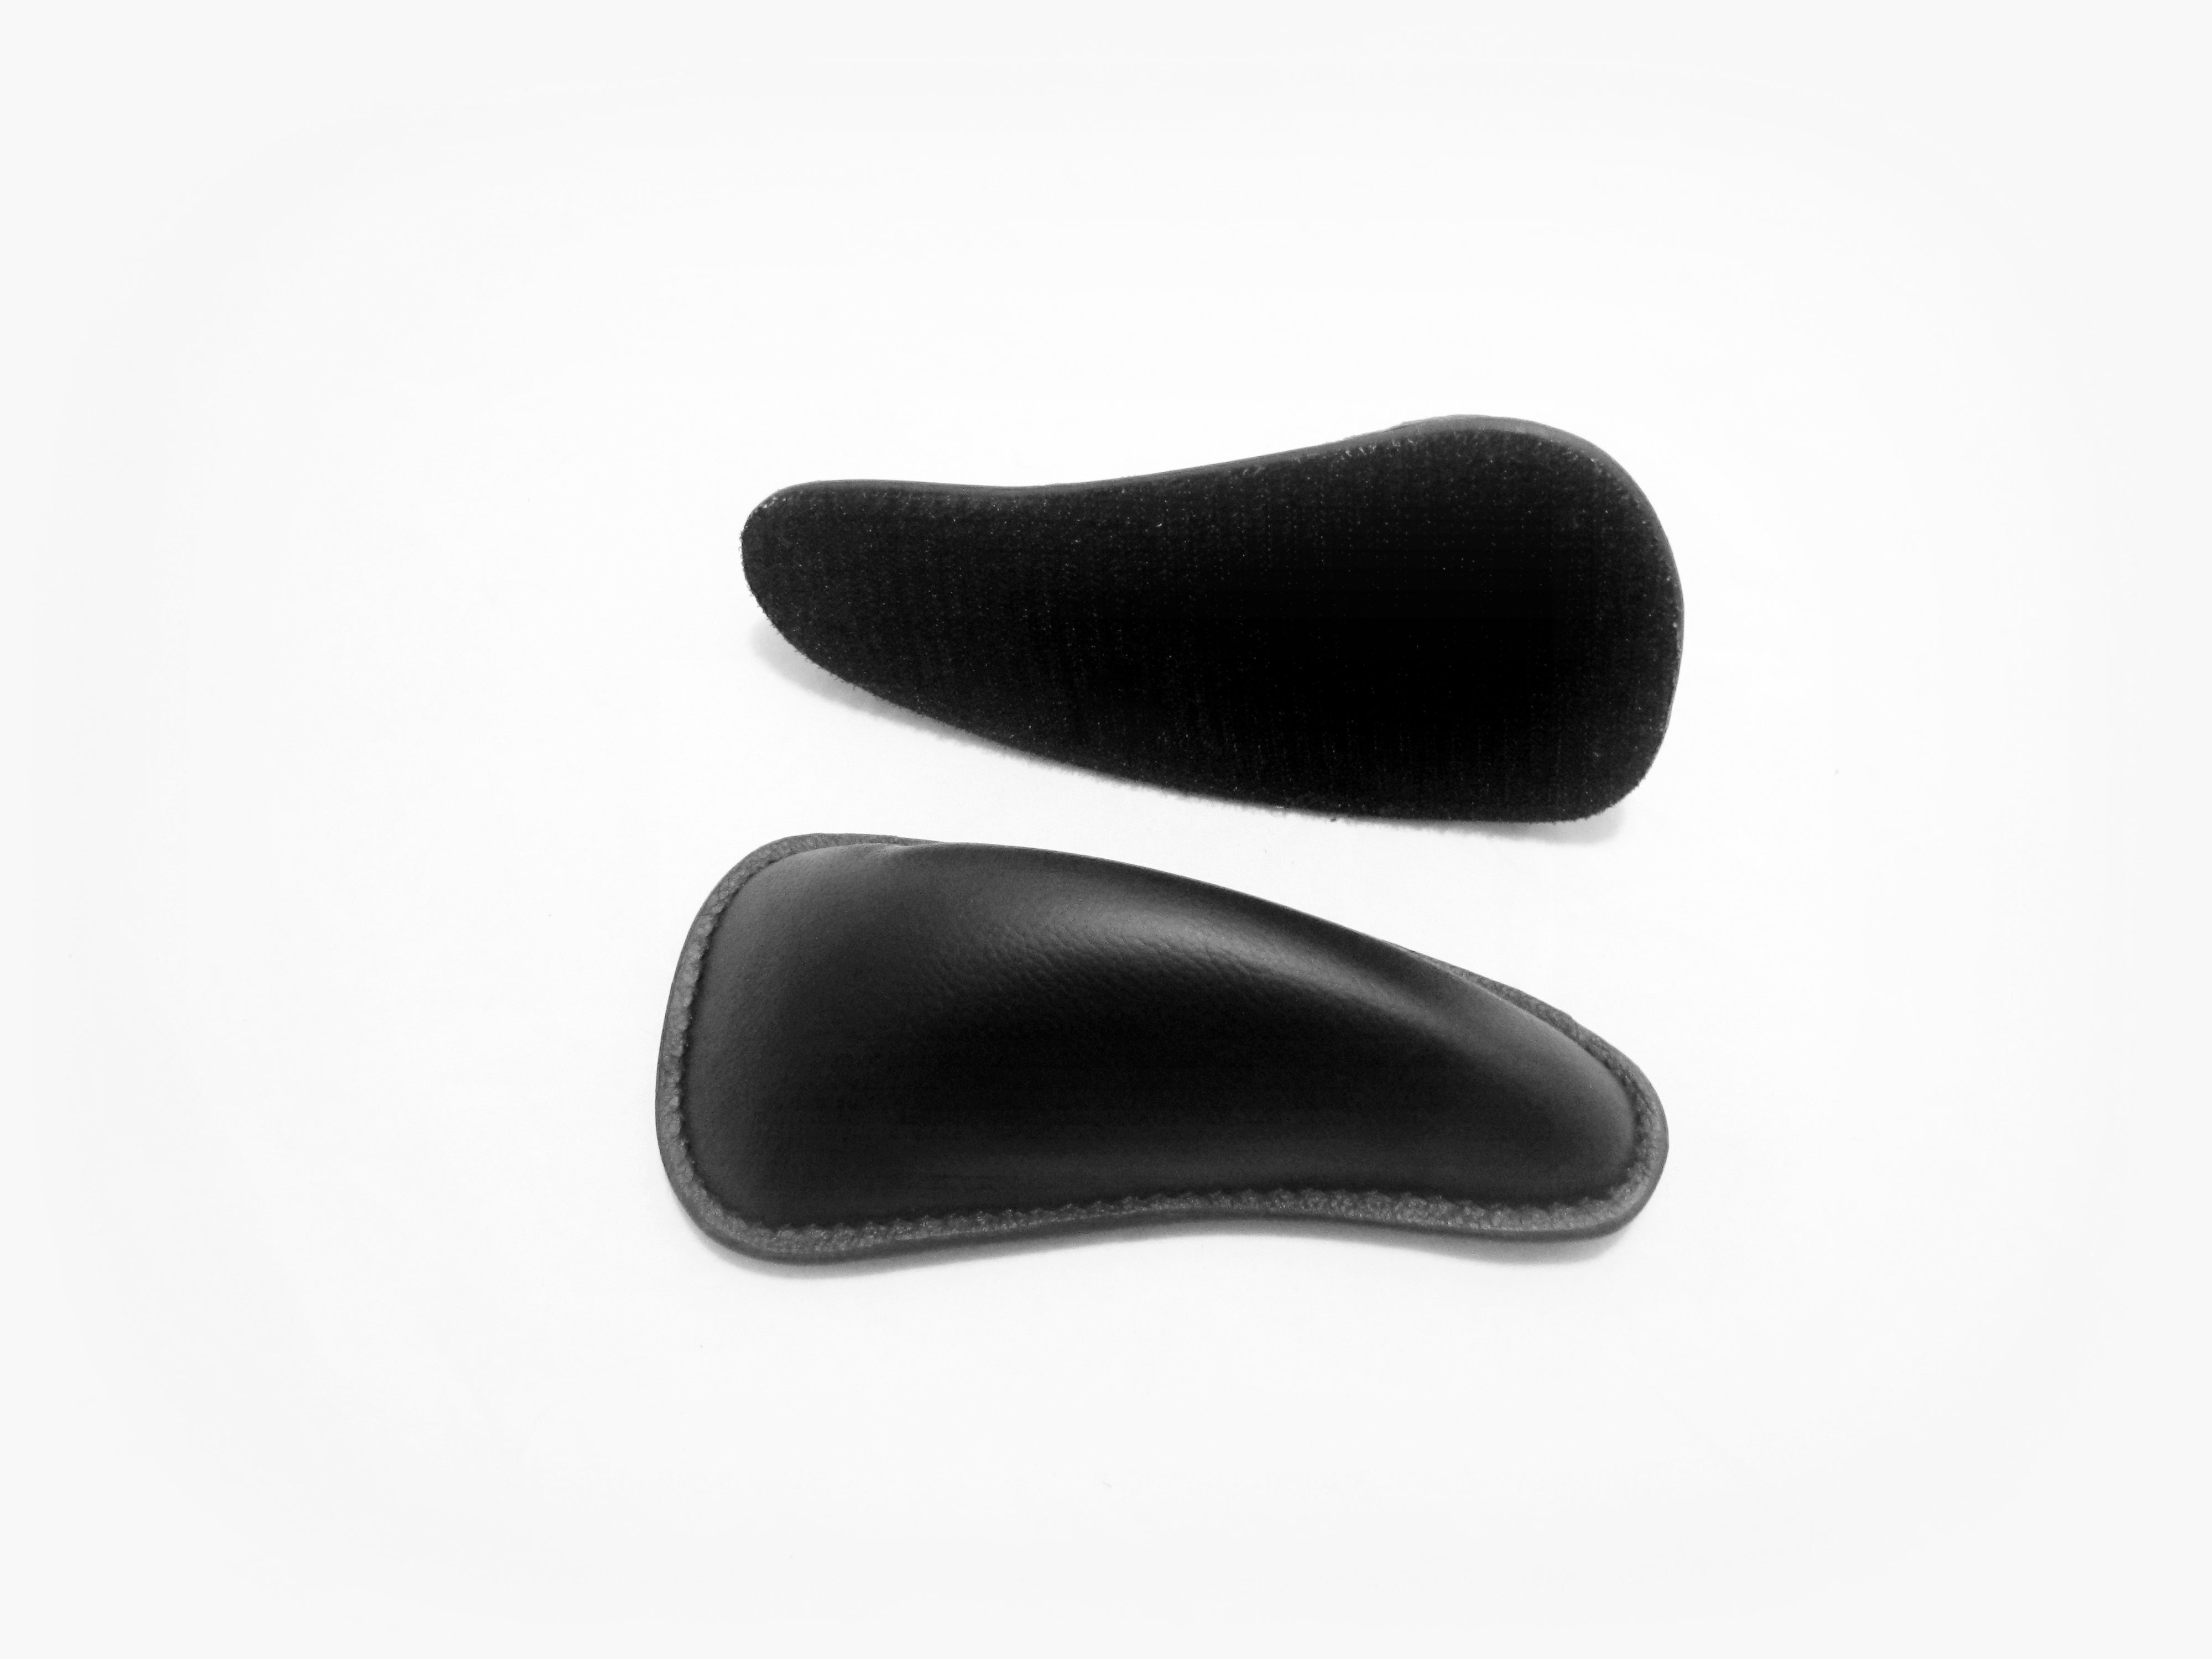 2 tailles - cales genoux "Standard" - avec Velcro en bas 